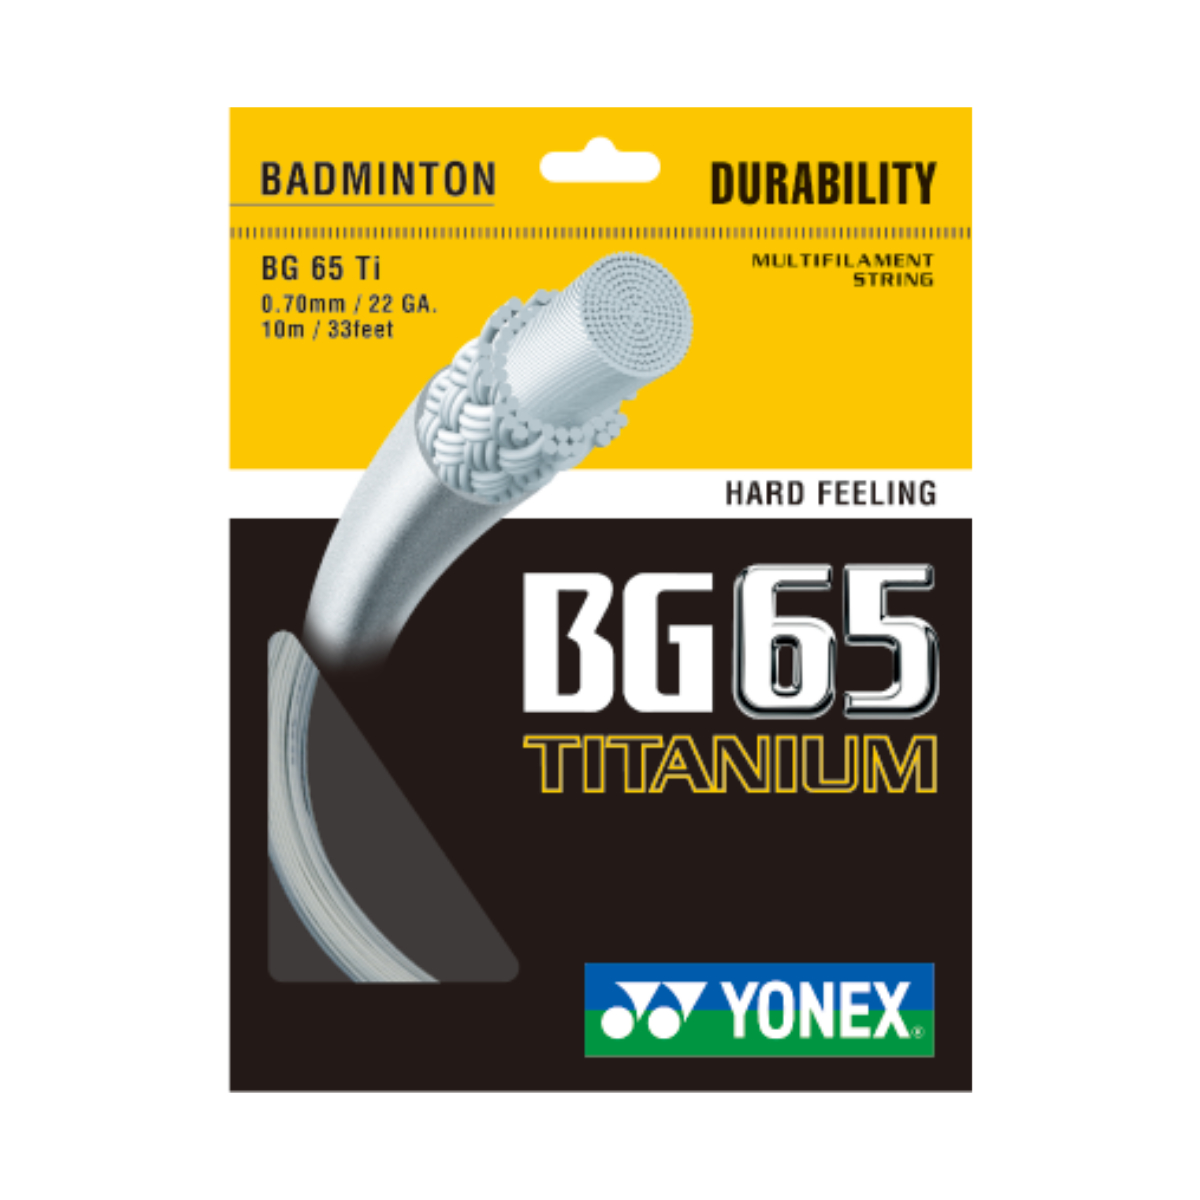 BG-65 TITANIUM